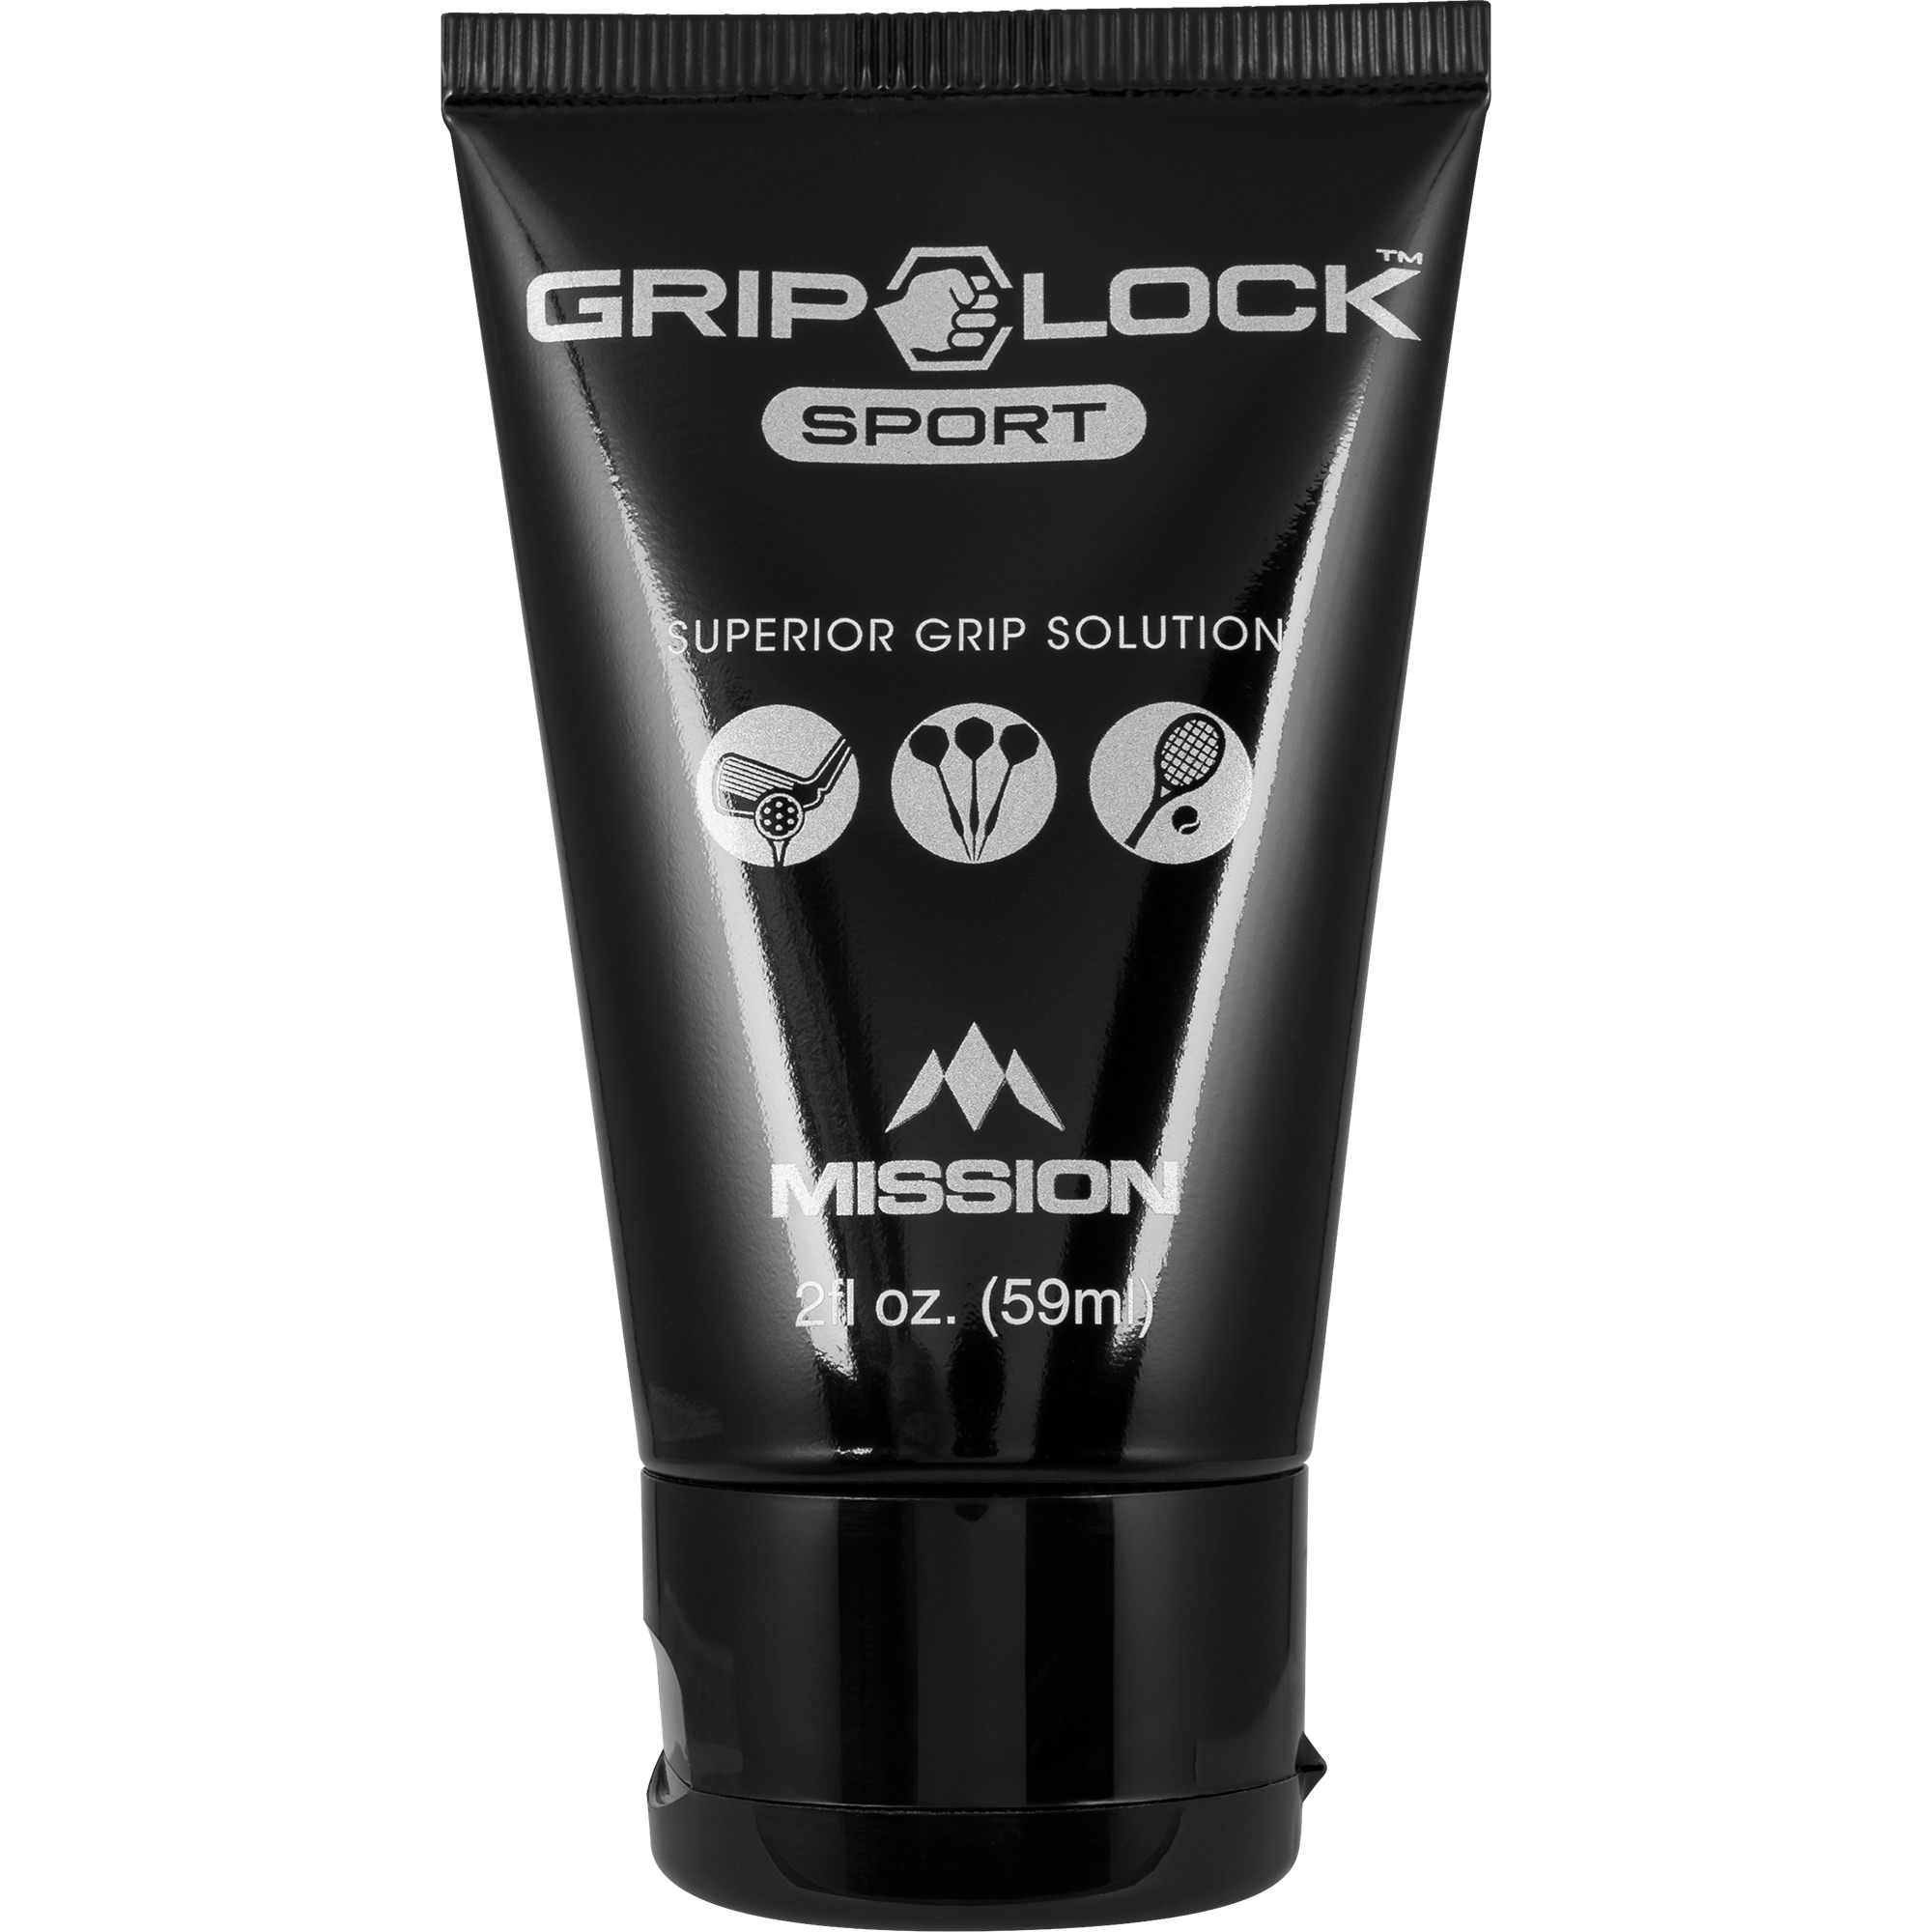 Mission Grip Lock Sport